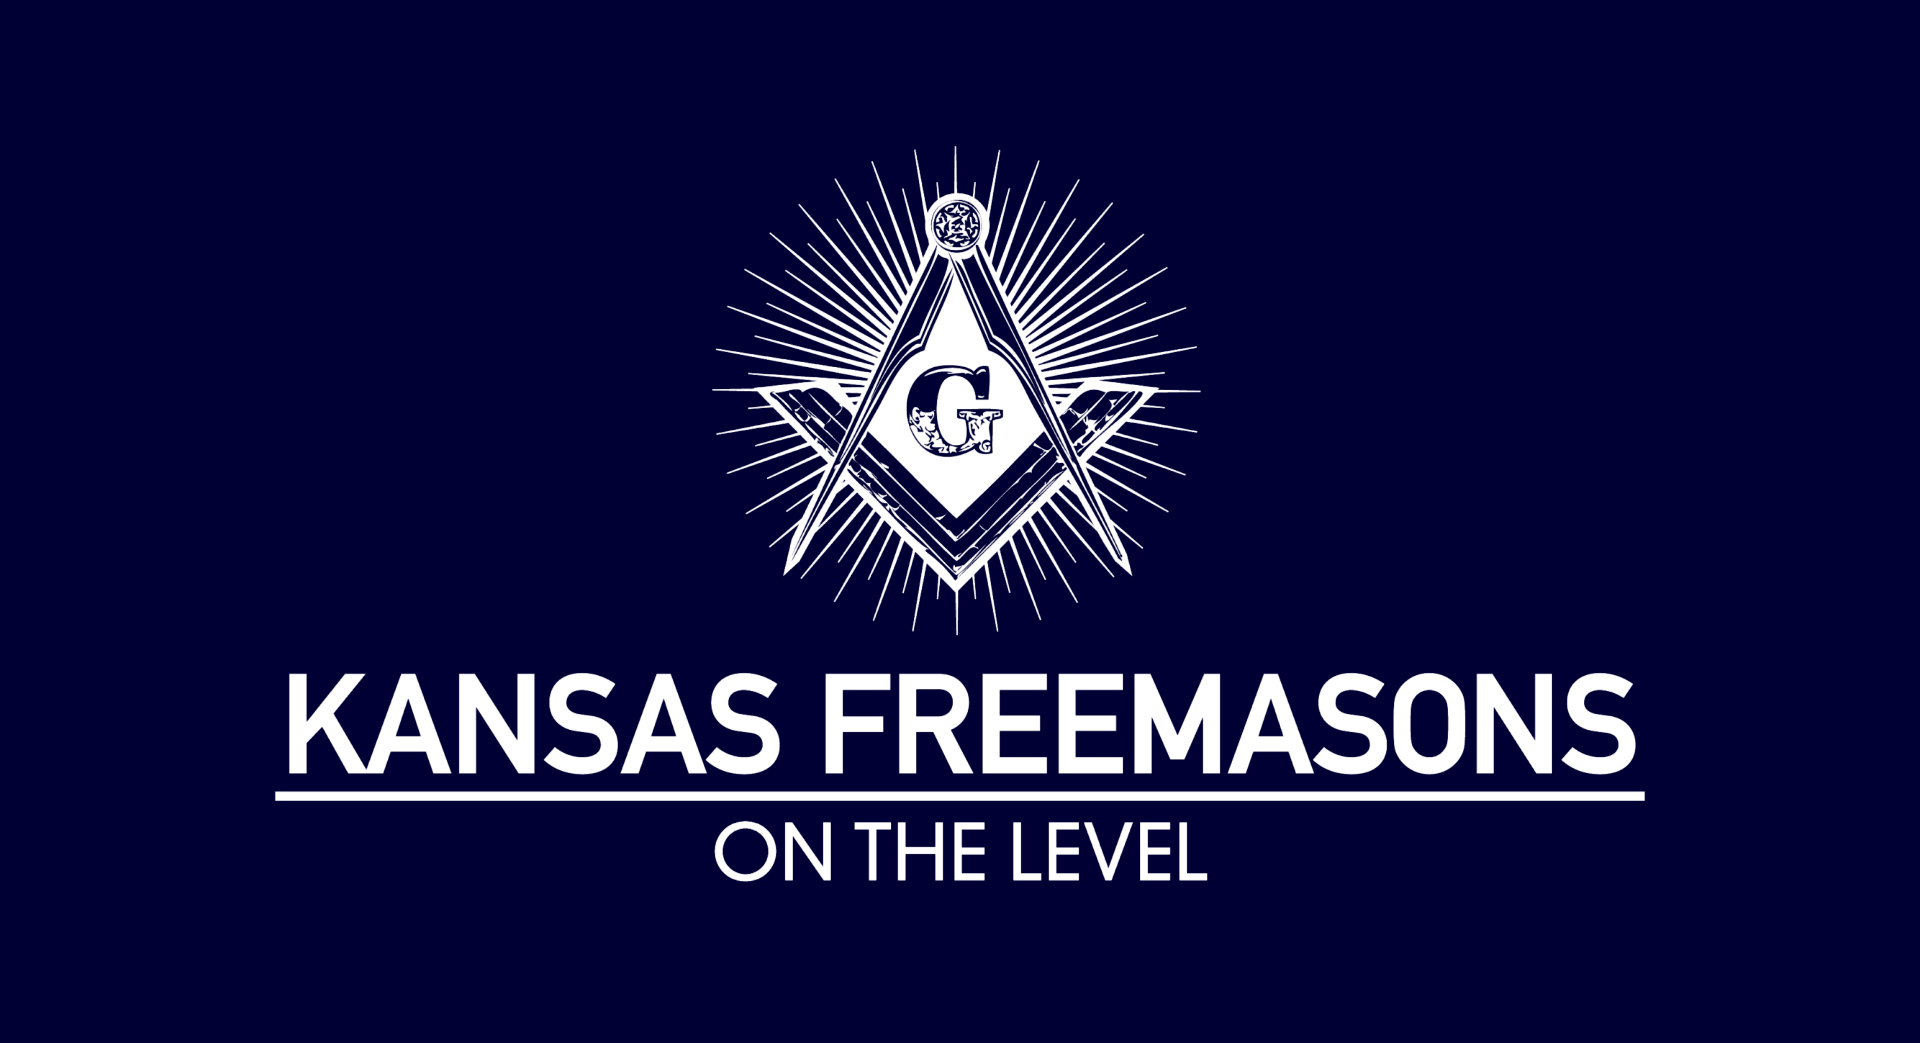 (c) Kansasmason.org